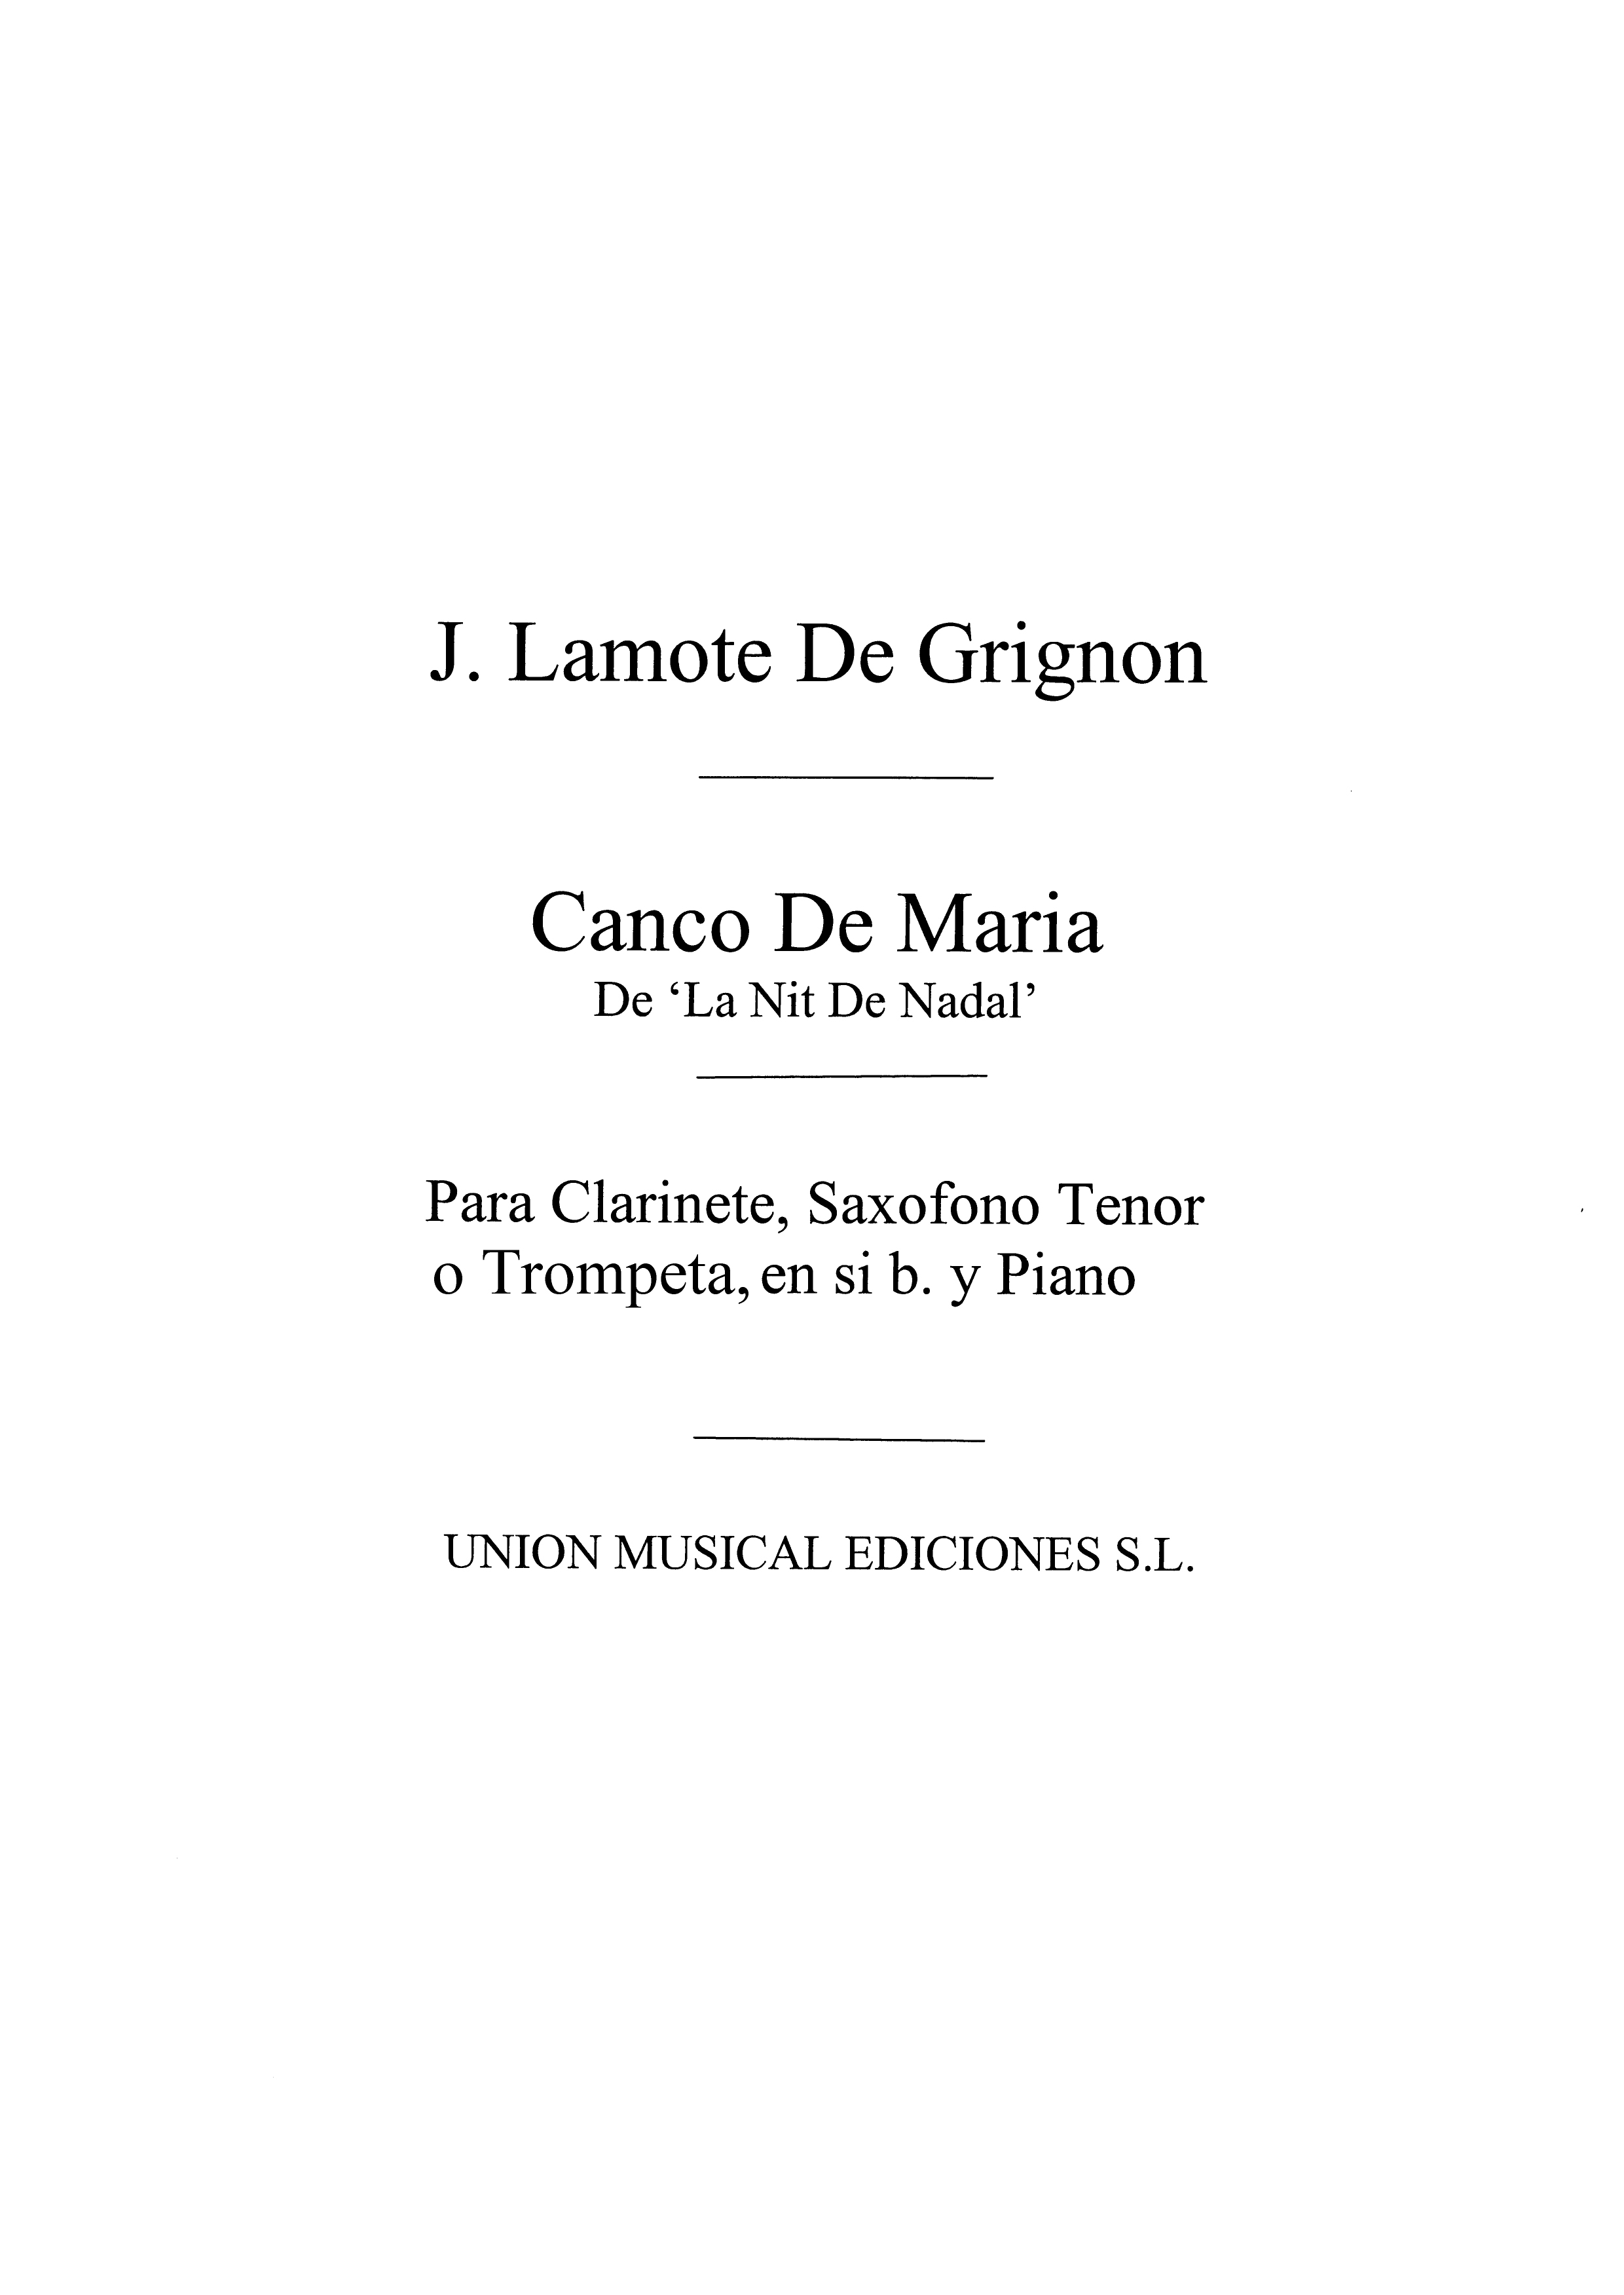 Lamote De Grignon: Canco De Maria (Amaz) for Tenor Sax and Piano